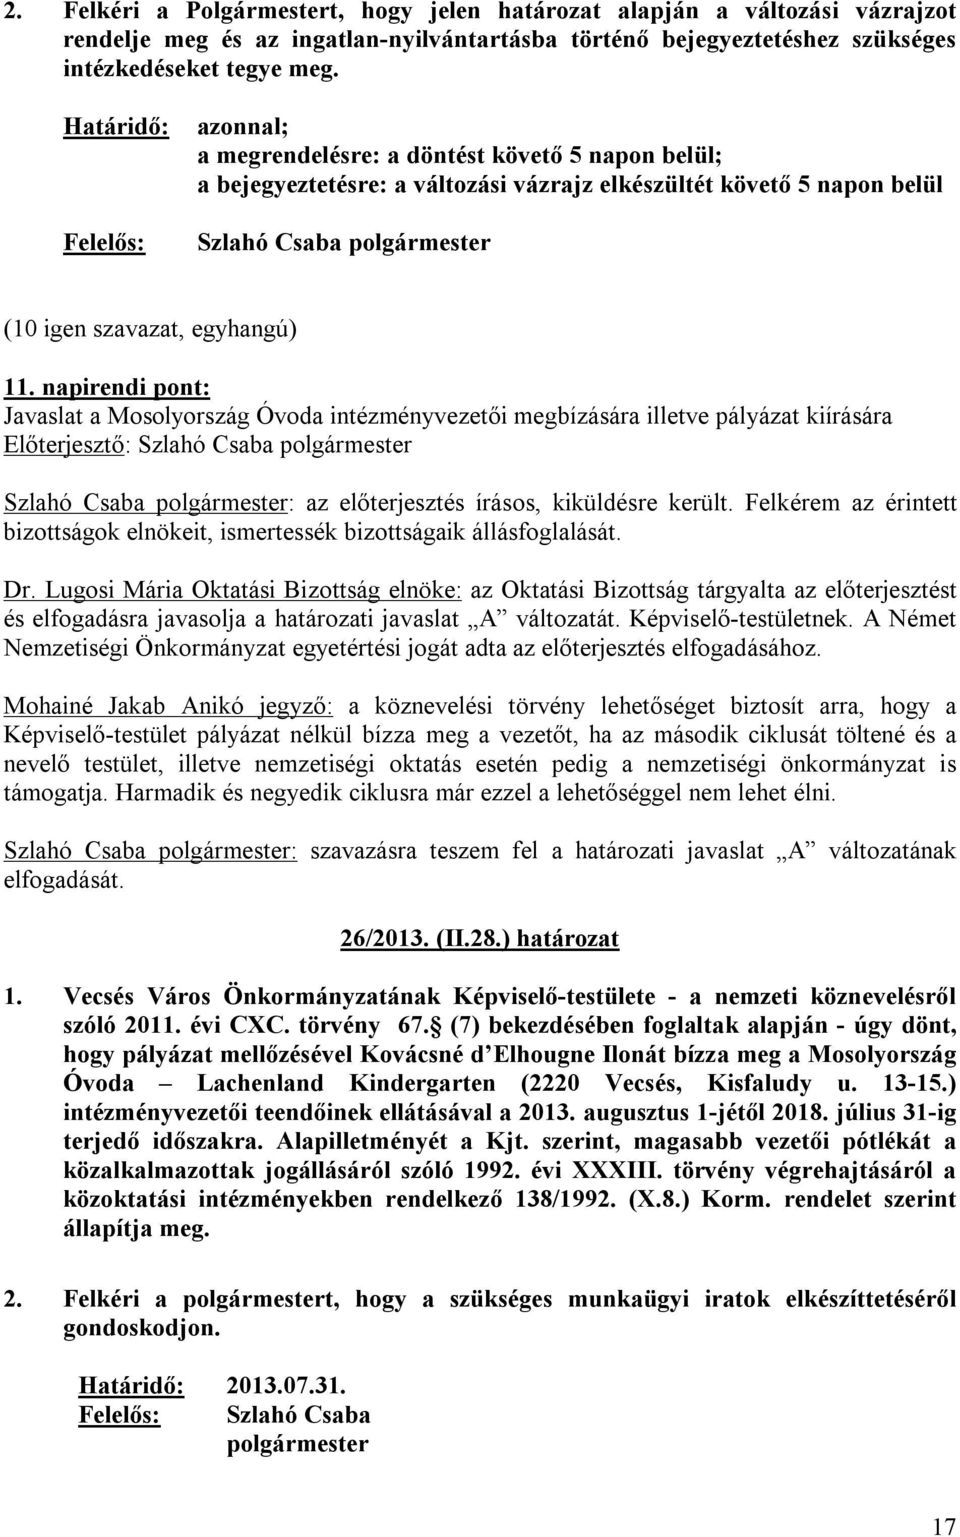 napirendi pont: Javaslat a Mosolyország Óvoda intézményvezetői megbízására illetve pályázat kiírására Szlahó Csaba polgármester: az előterjesztés írásos, kiküldésre került.